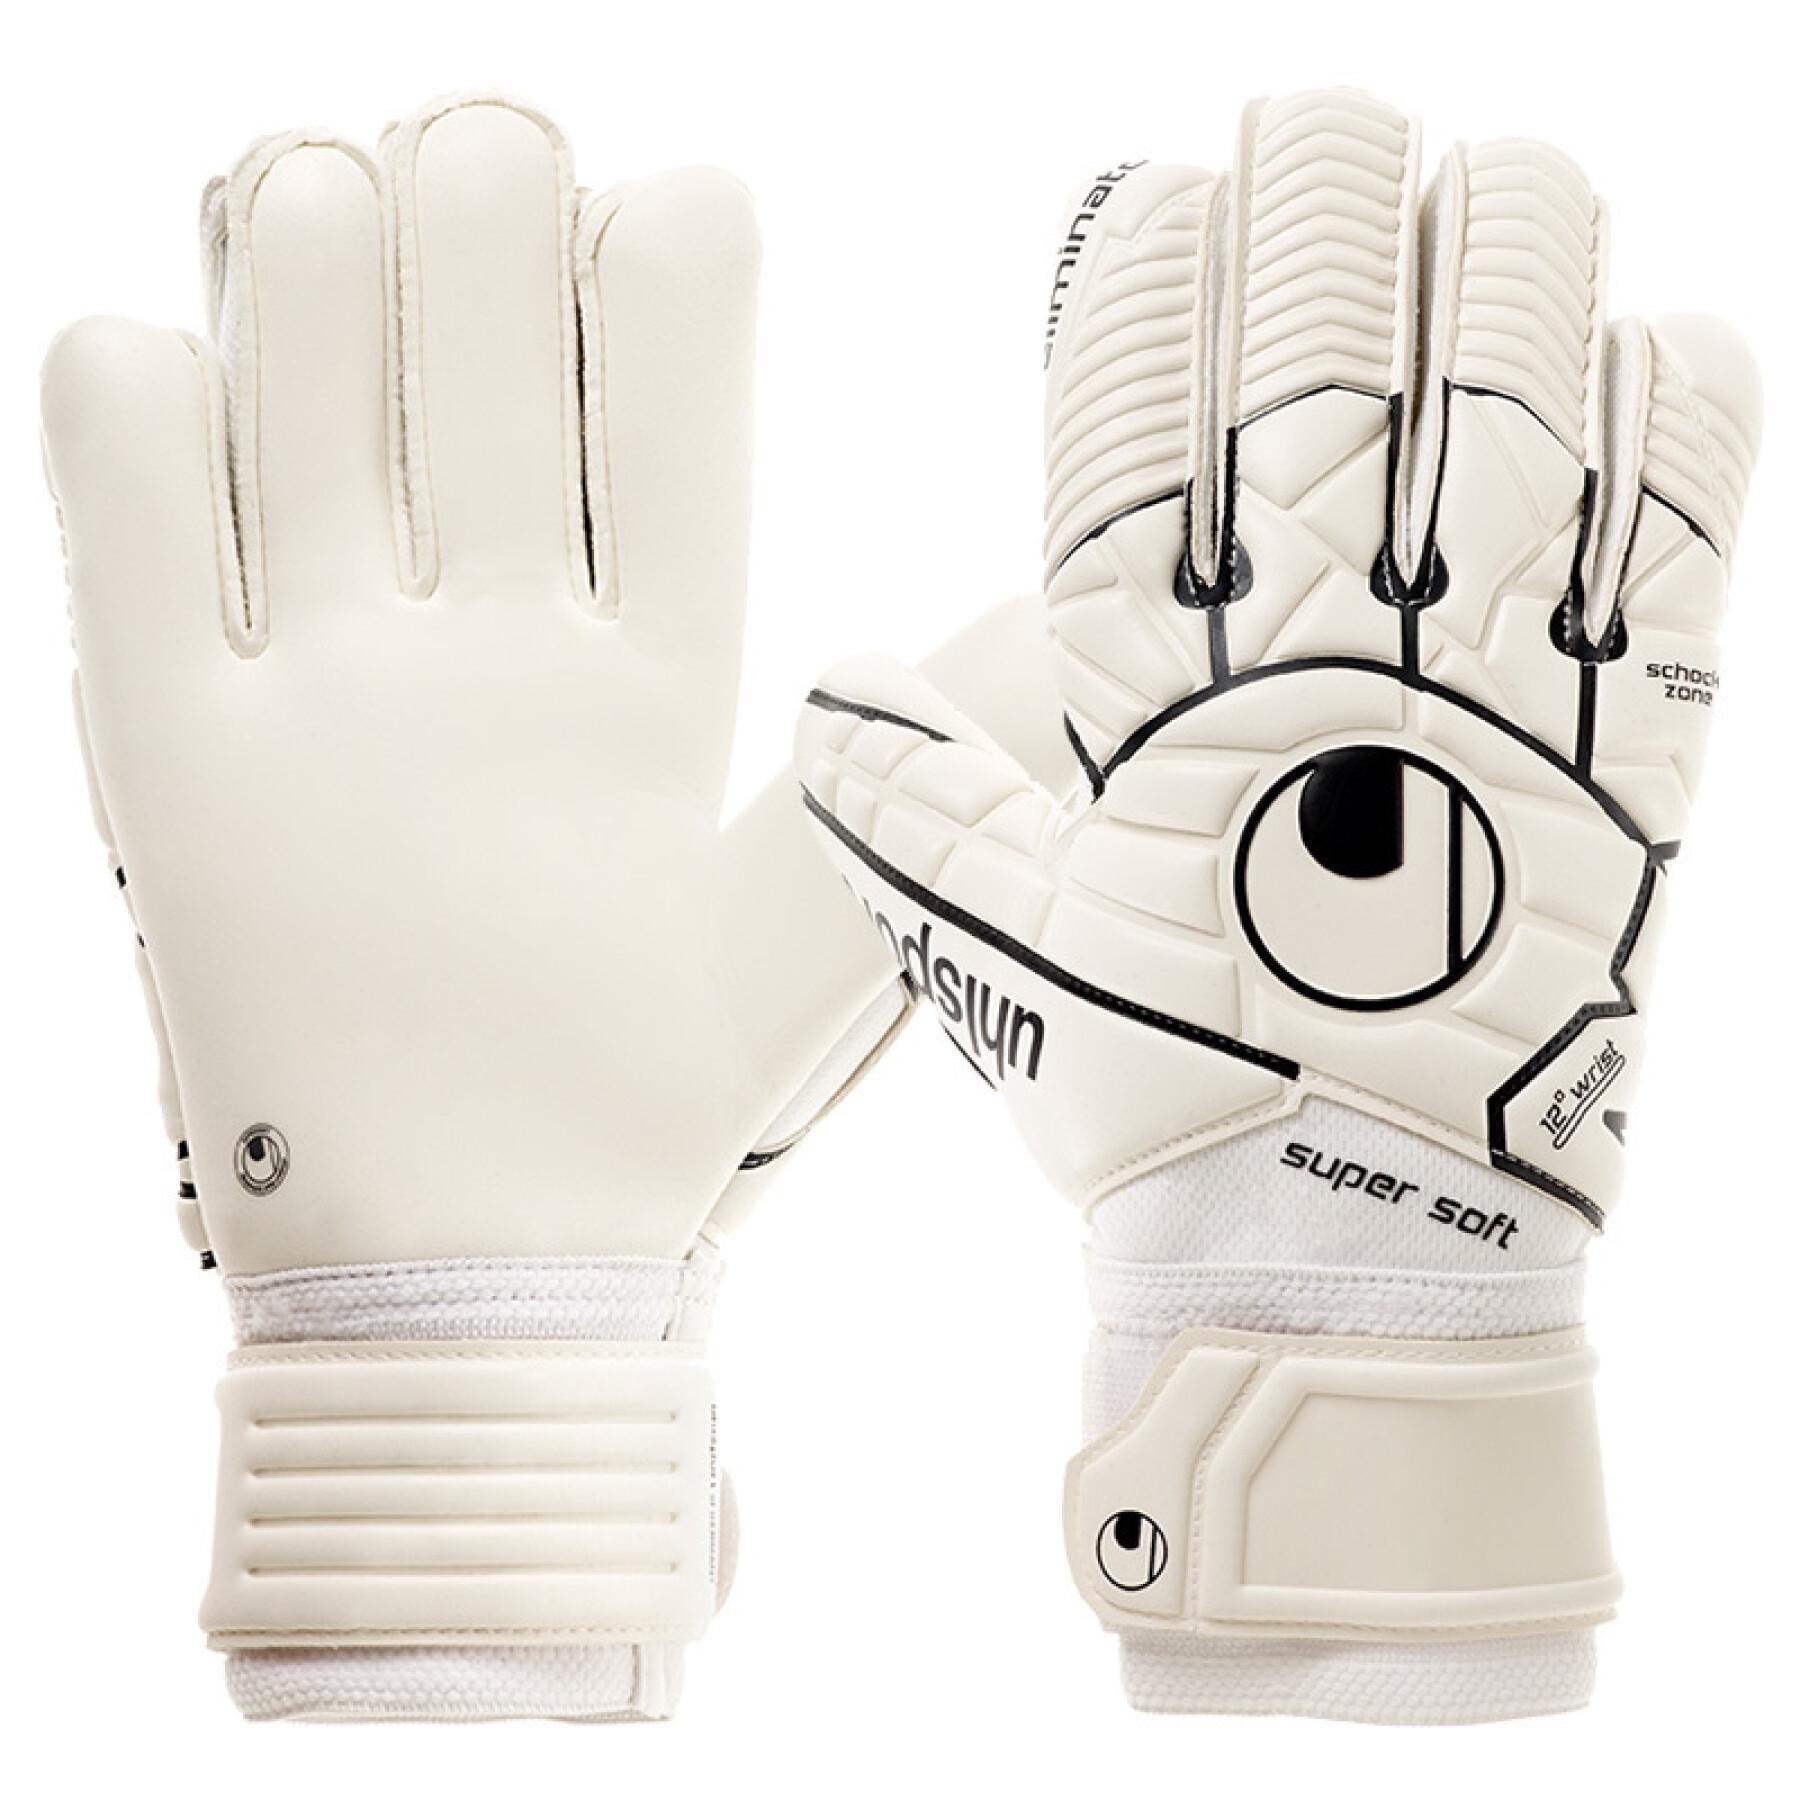 Goalkeeper gloves Uhlsport Eliminator Comfort Textile (2017)